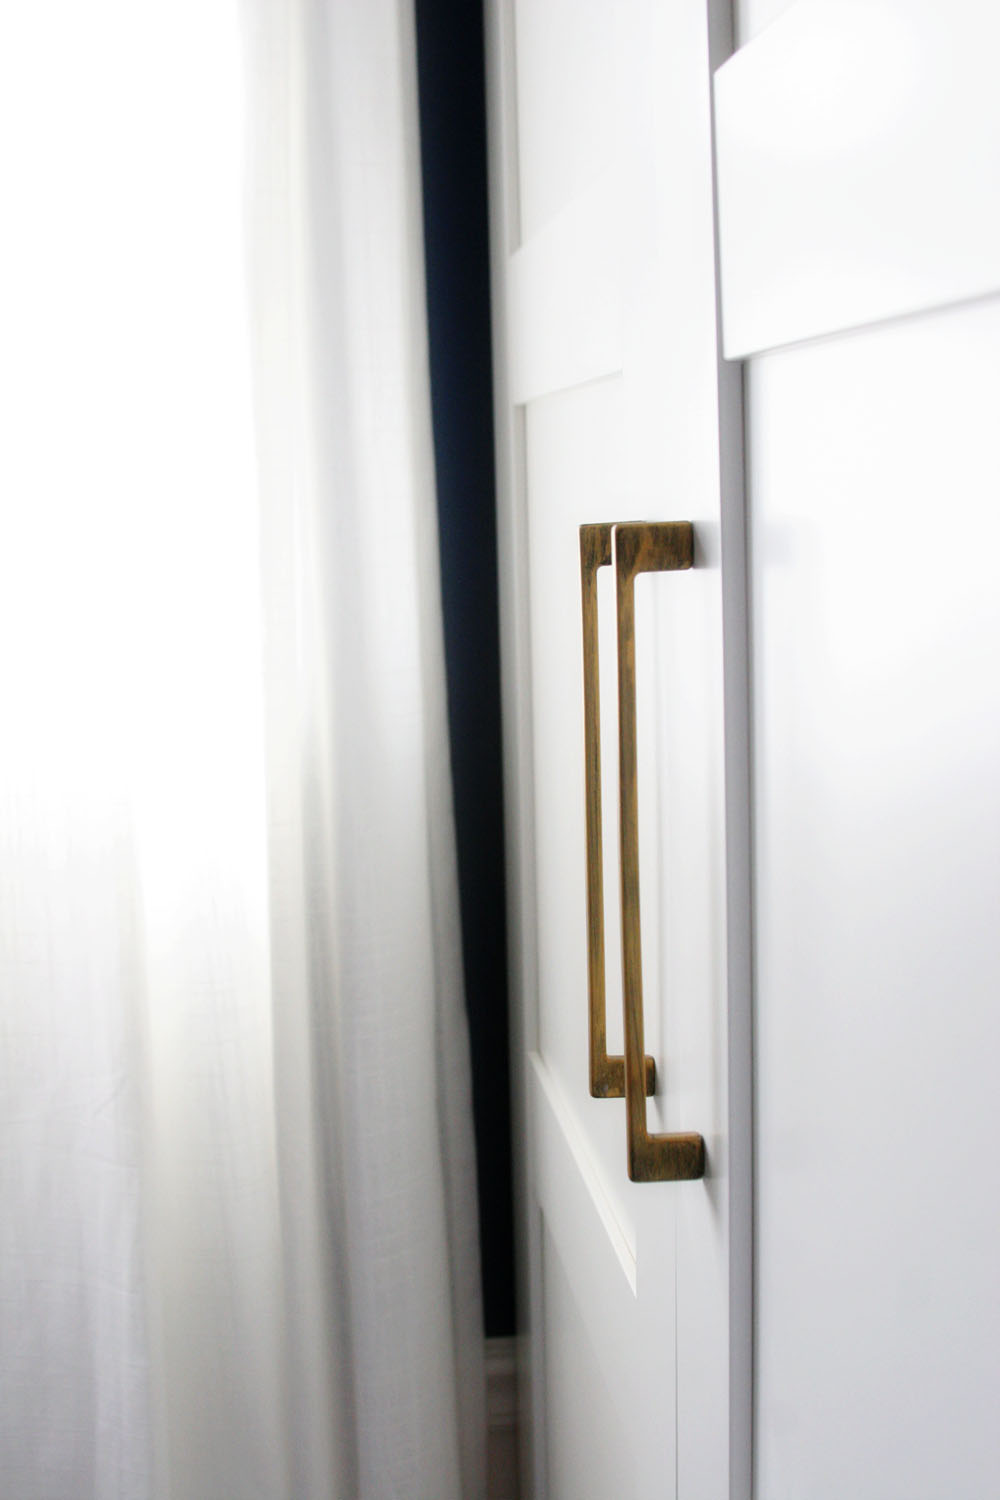 BIGBOBA 2 Pcs of Semicircular Shape Door Handle Cabinet Drawer Bow Pulls Handle Sliding Doors Door Handle for Kitchen Dresser Wardrobe